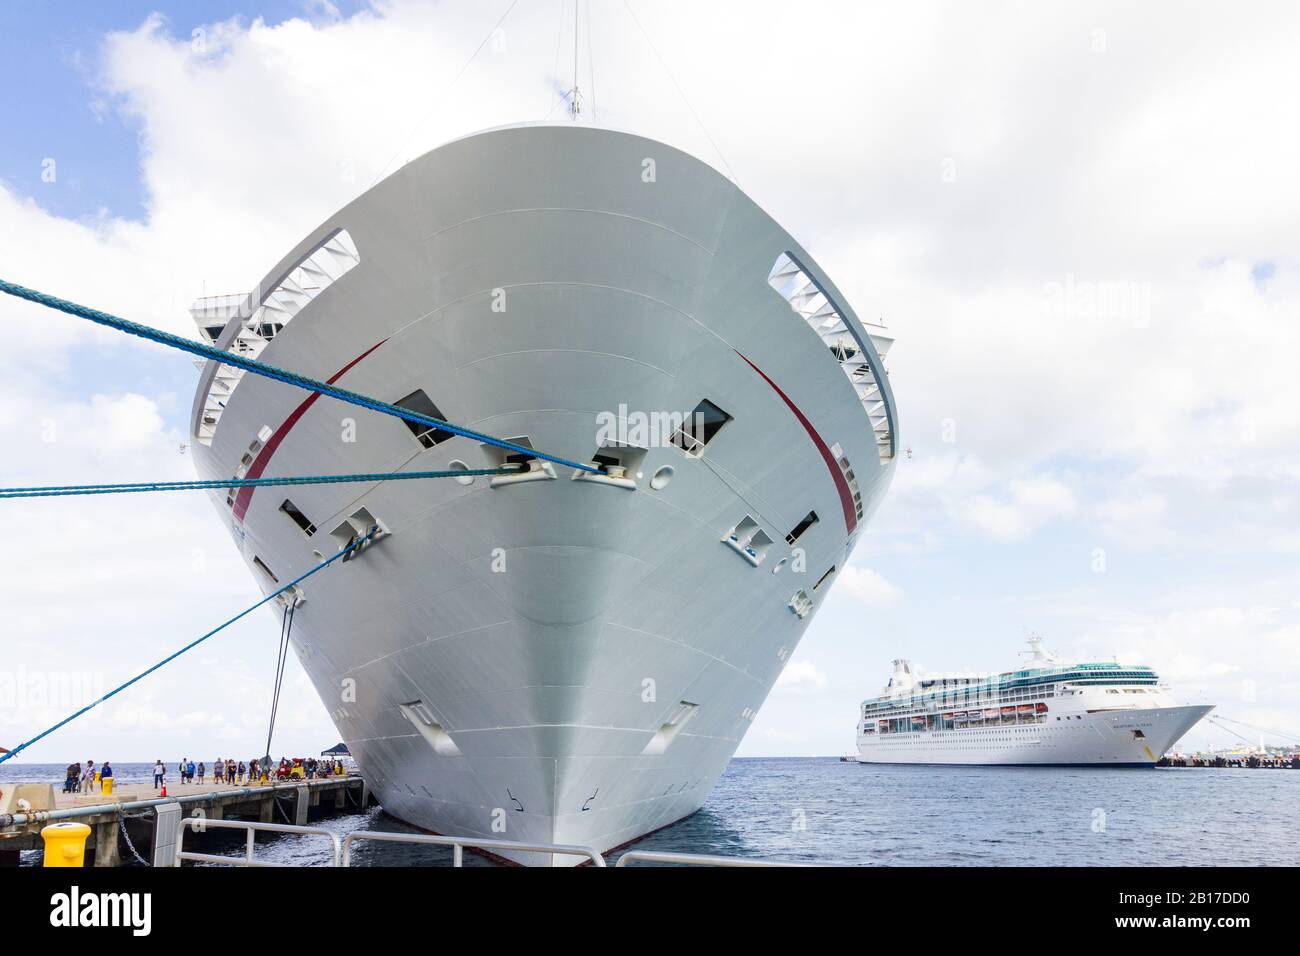 Dos cruceros Carnival atracaron en Cozumel México Foto de stock